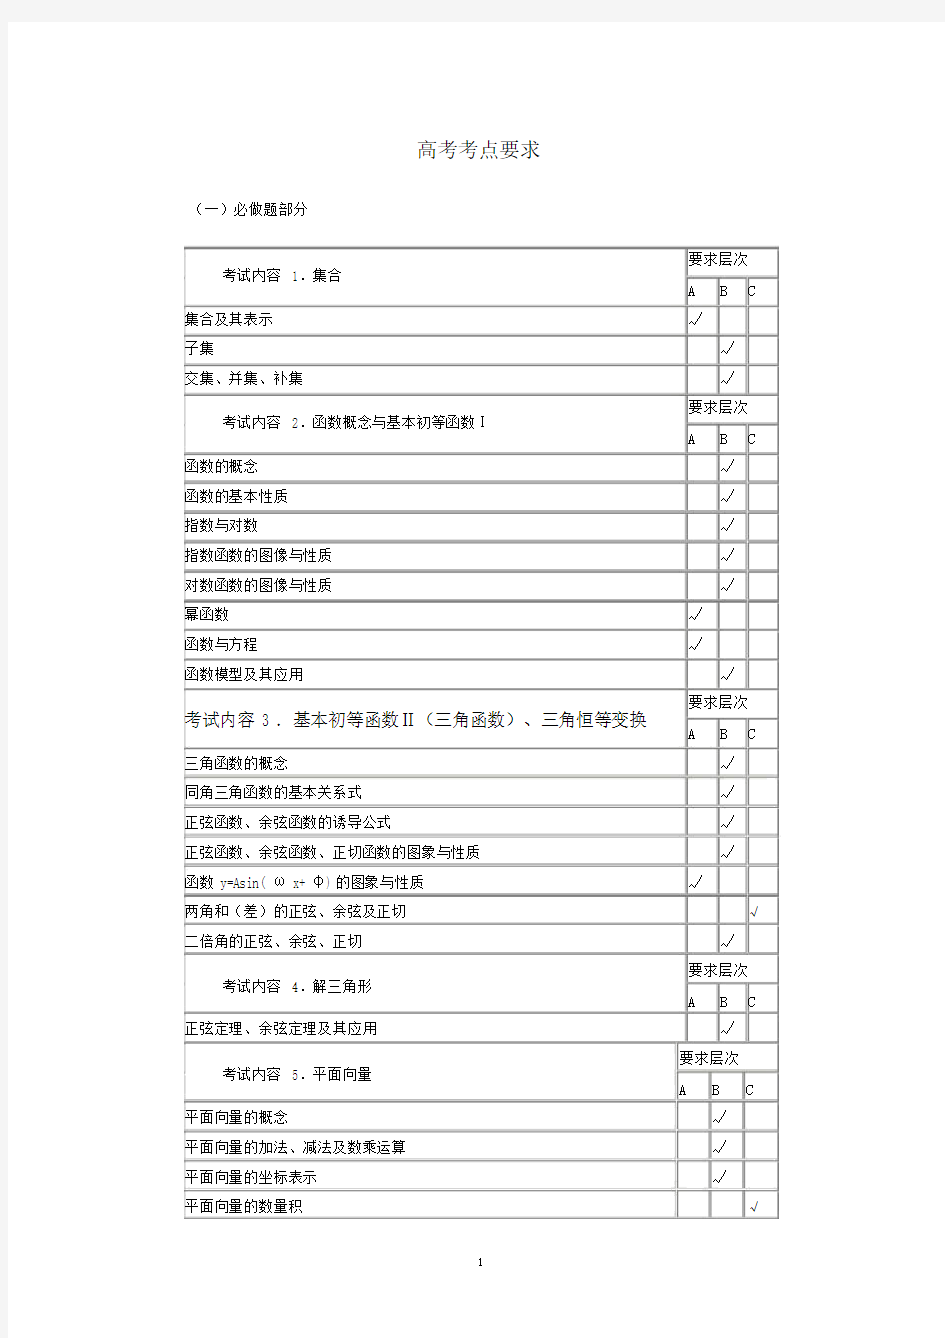 江苏高考数学考点表